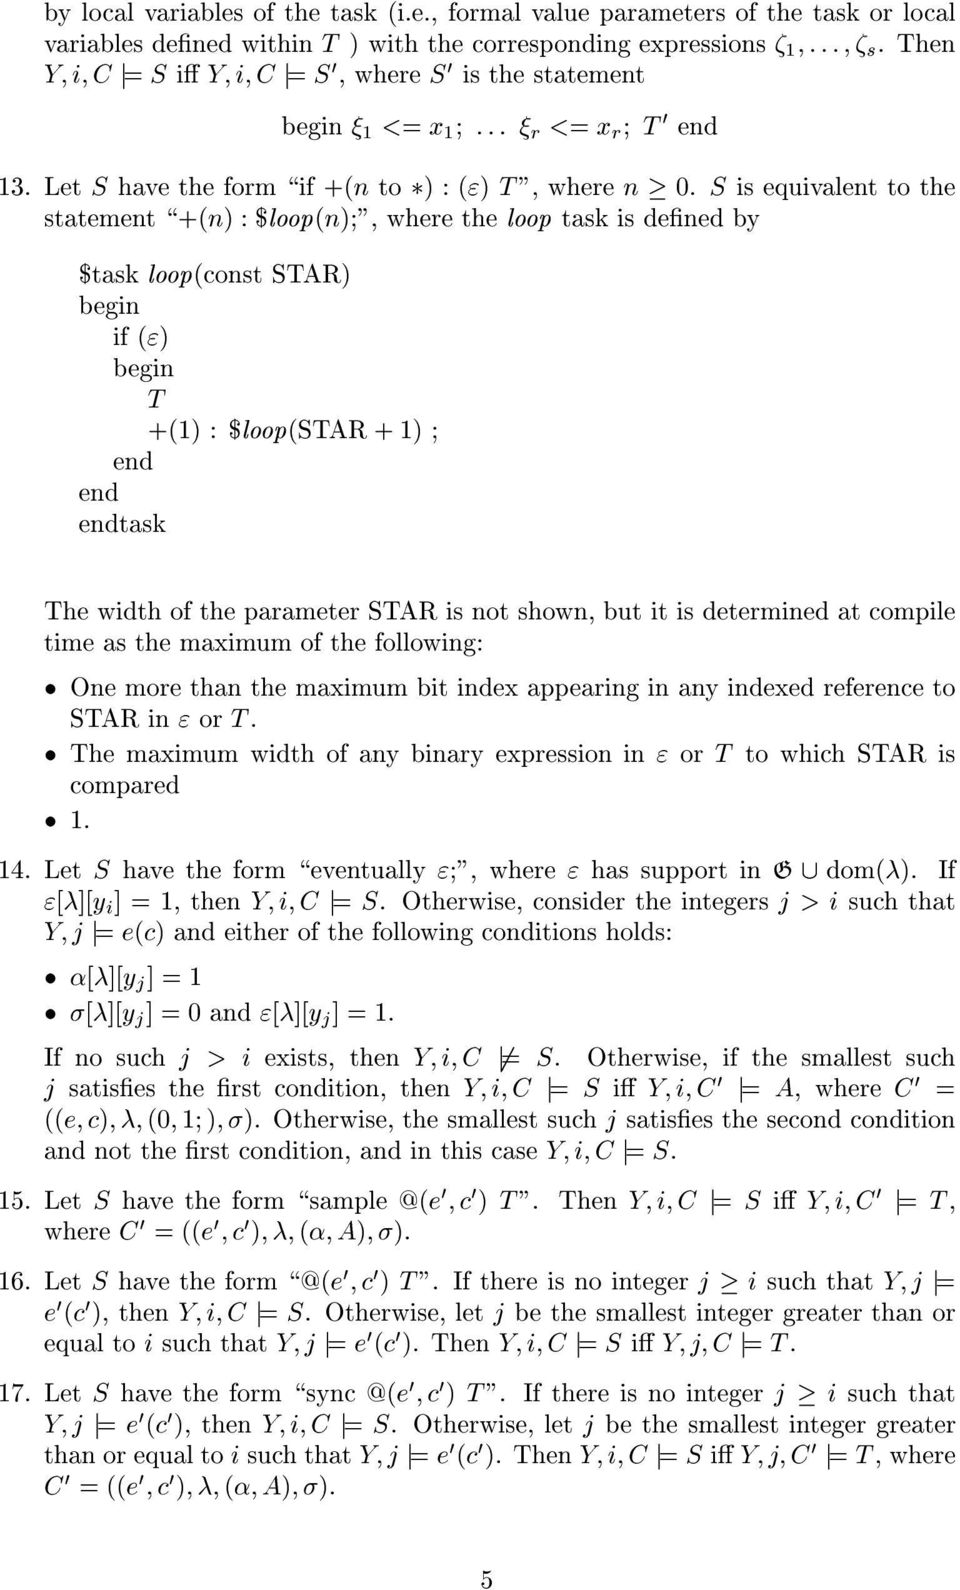 S is equivalent tothe statement \+(n) :$loop(n) ", where the loop task is dened by $task loop(const STAR) begin if (") begin T +(1) : $loop(star + 1) end end endtask The width of the parameter STAR